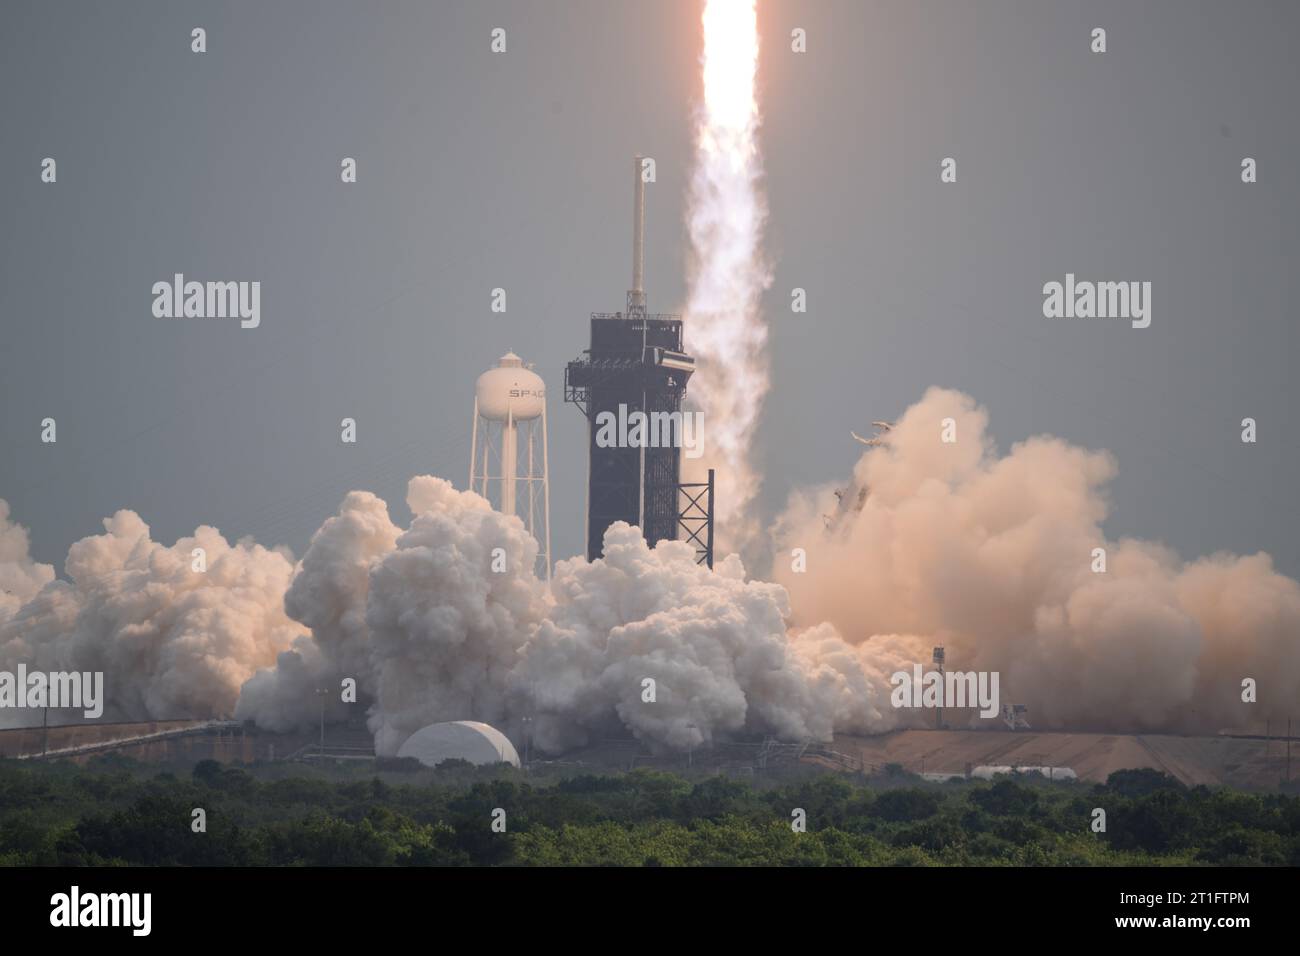 Cape Canaveral, Vereinigte Staaten von Amerika. 13. Oktober 2023. Eine SpaceX Falcon Heavy Rakete mit dem Psyche-Raumschiff an Bord explodiert am 13. Oktober 2023 auf dem Launch Complex 39A im Kennedy Space Center in Cape Canaveral, Florida. Die Rakete wird die NASA Psyche zu einem metallreichen Asteroiden transportieren, der die Sonne umkreist. Quelle: Aubrey Gemignani/NASA/Alamy Live News Stockfoto